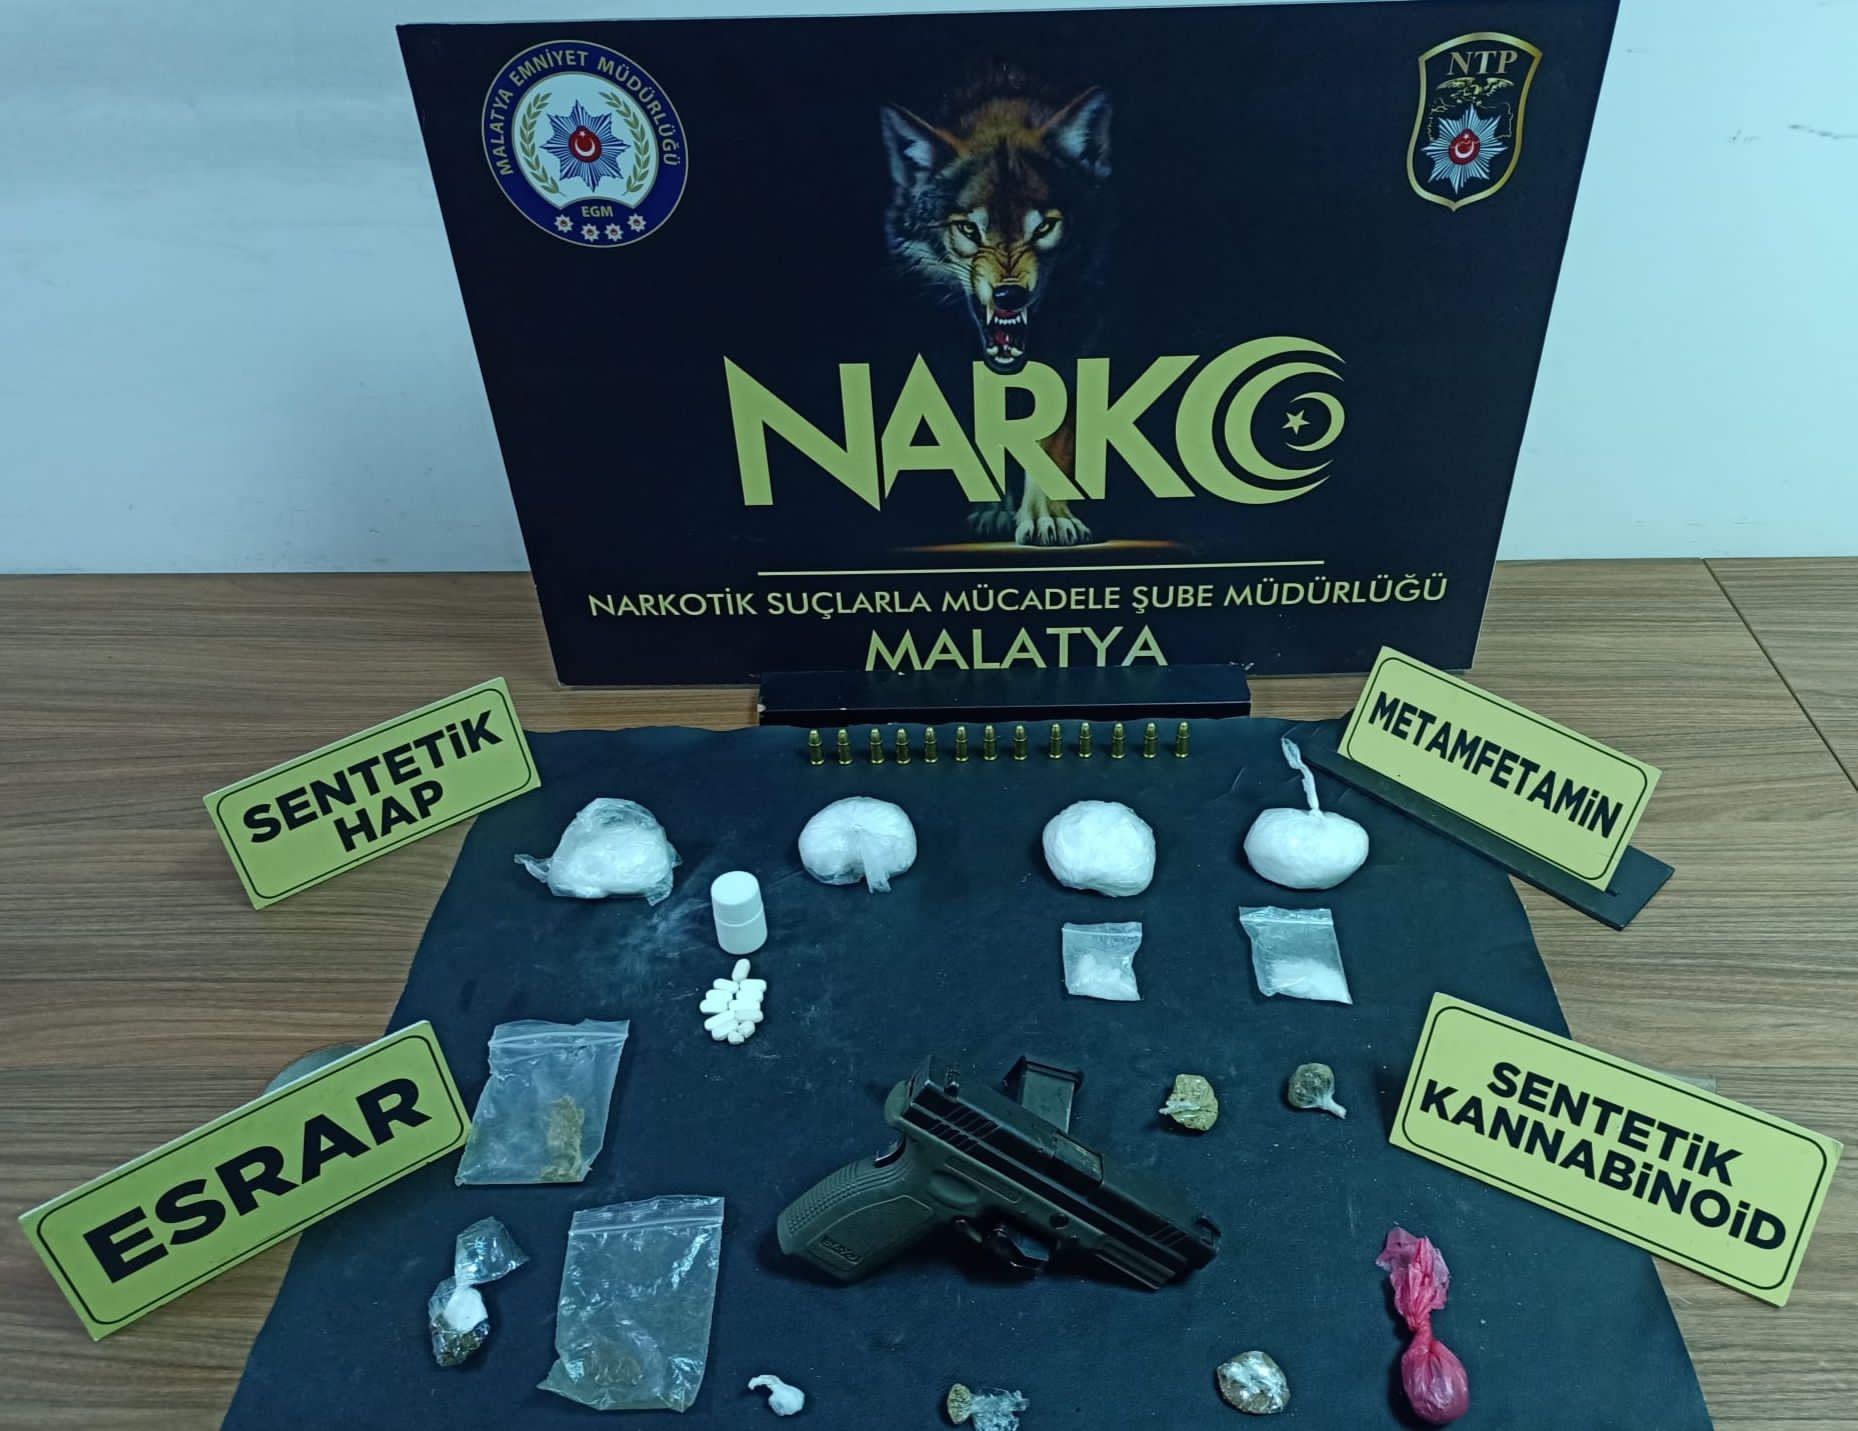 Malatya İl Emniyet Müdürlüğü Narkotik Suçlarla Mücadele Şubesi ekipleri, bir otomobilin özel tertibatla açılan zulasında gizlenmiş uyuşturucu ve silah ele geçirdi. Olayla ilgili olarak 3 şüpheli gözaltına alındı.